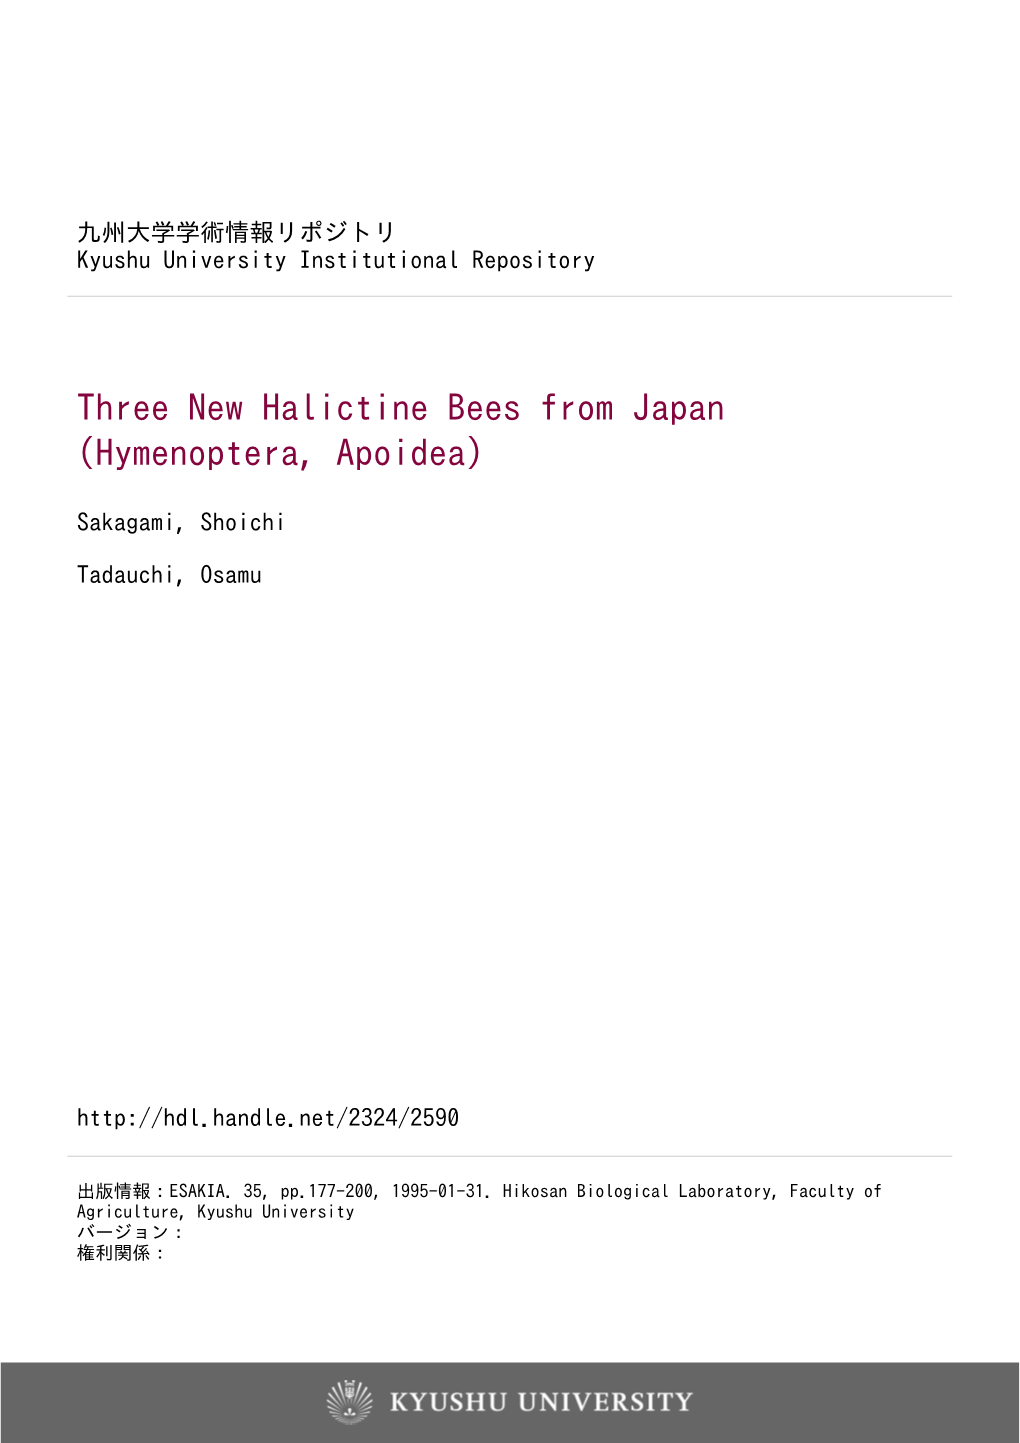 Three New Halictine Bees from Japan (Hymenoptera, Apoidea)